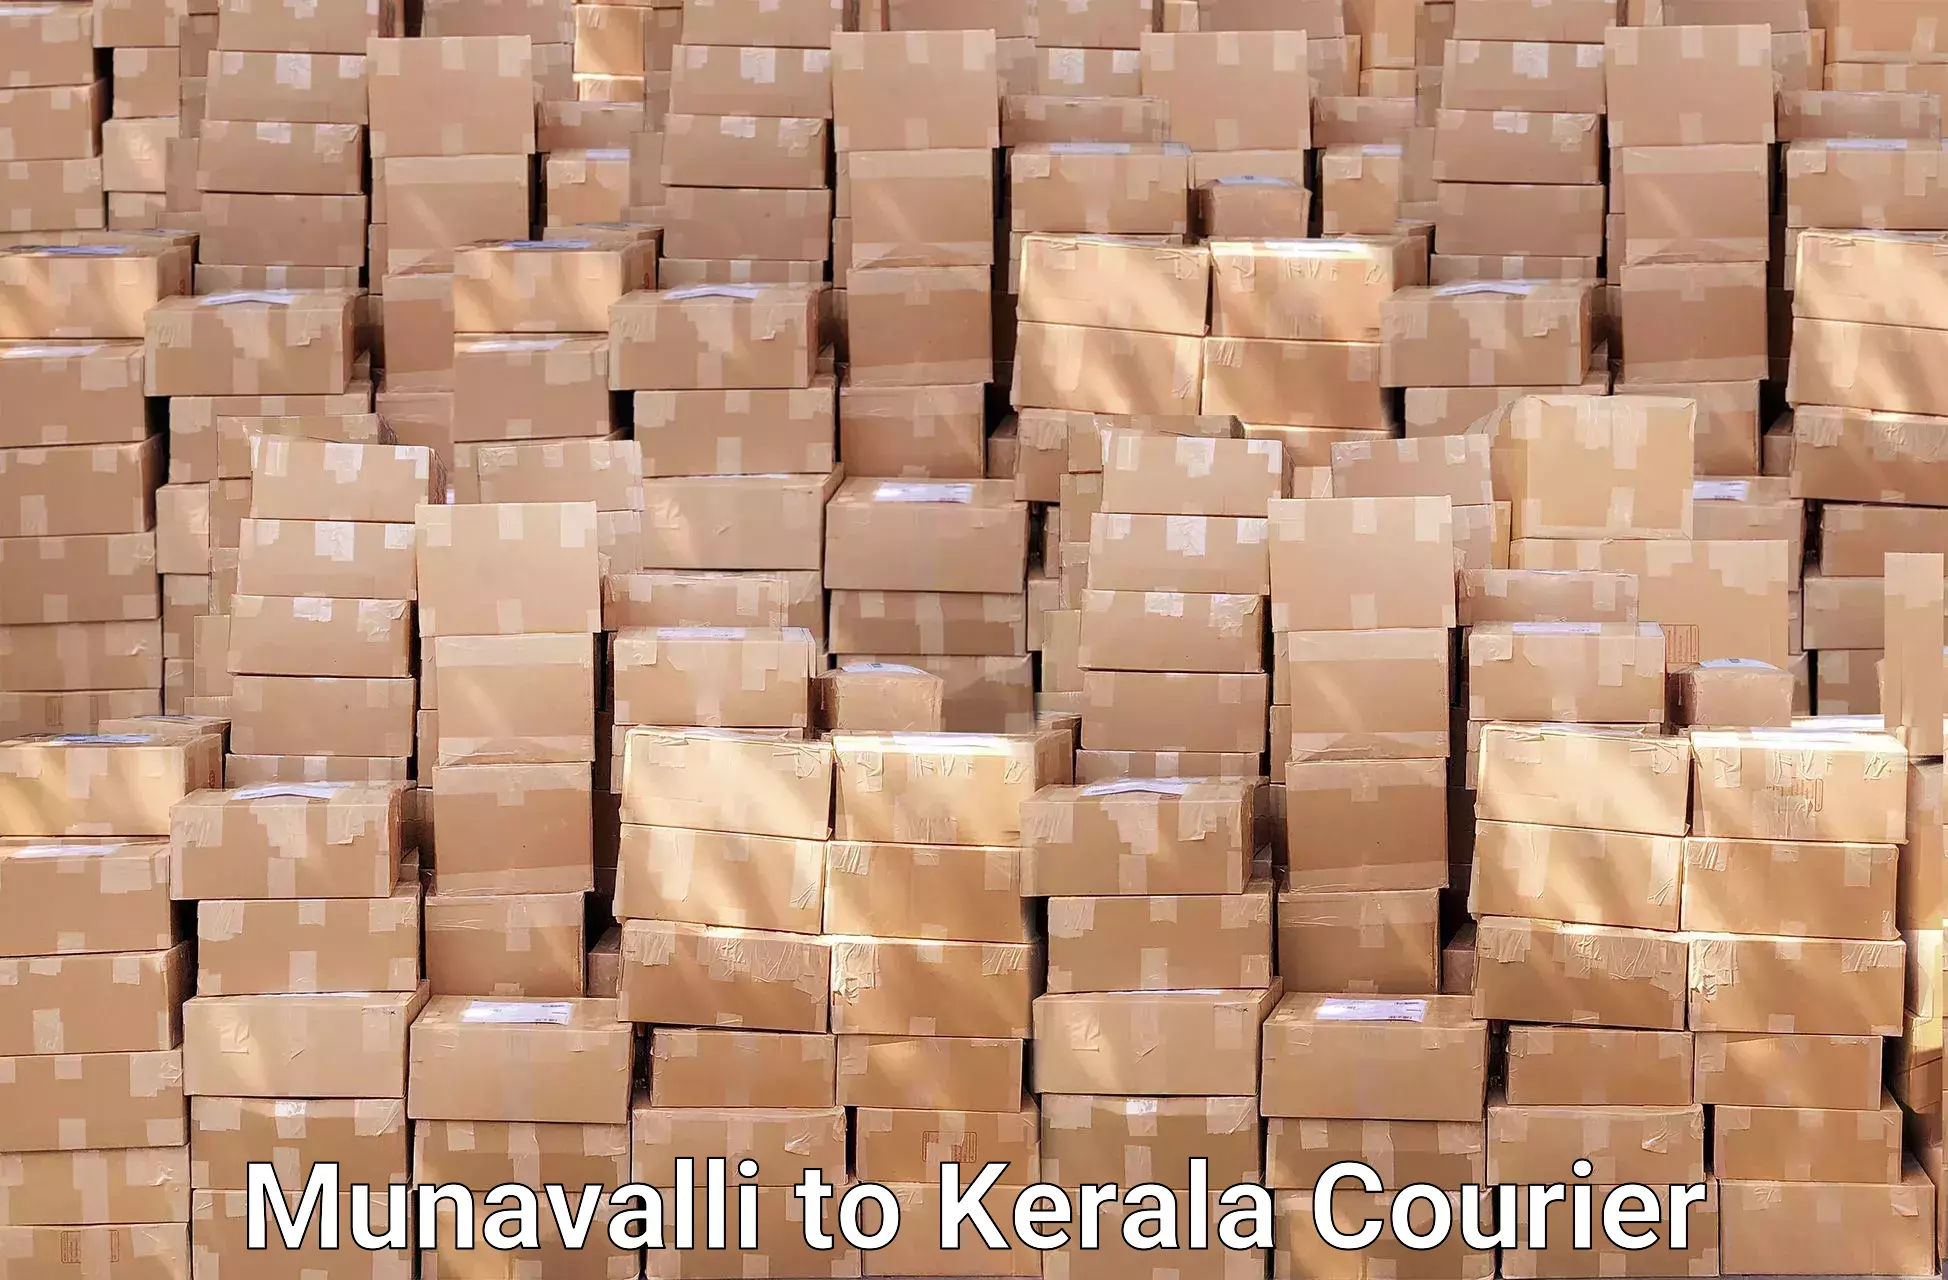 Efficient packing and moving Munavalli to Kottarakkara